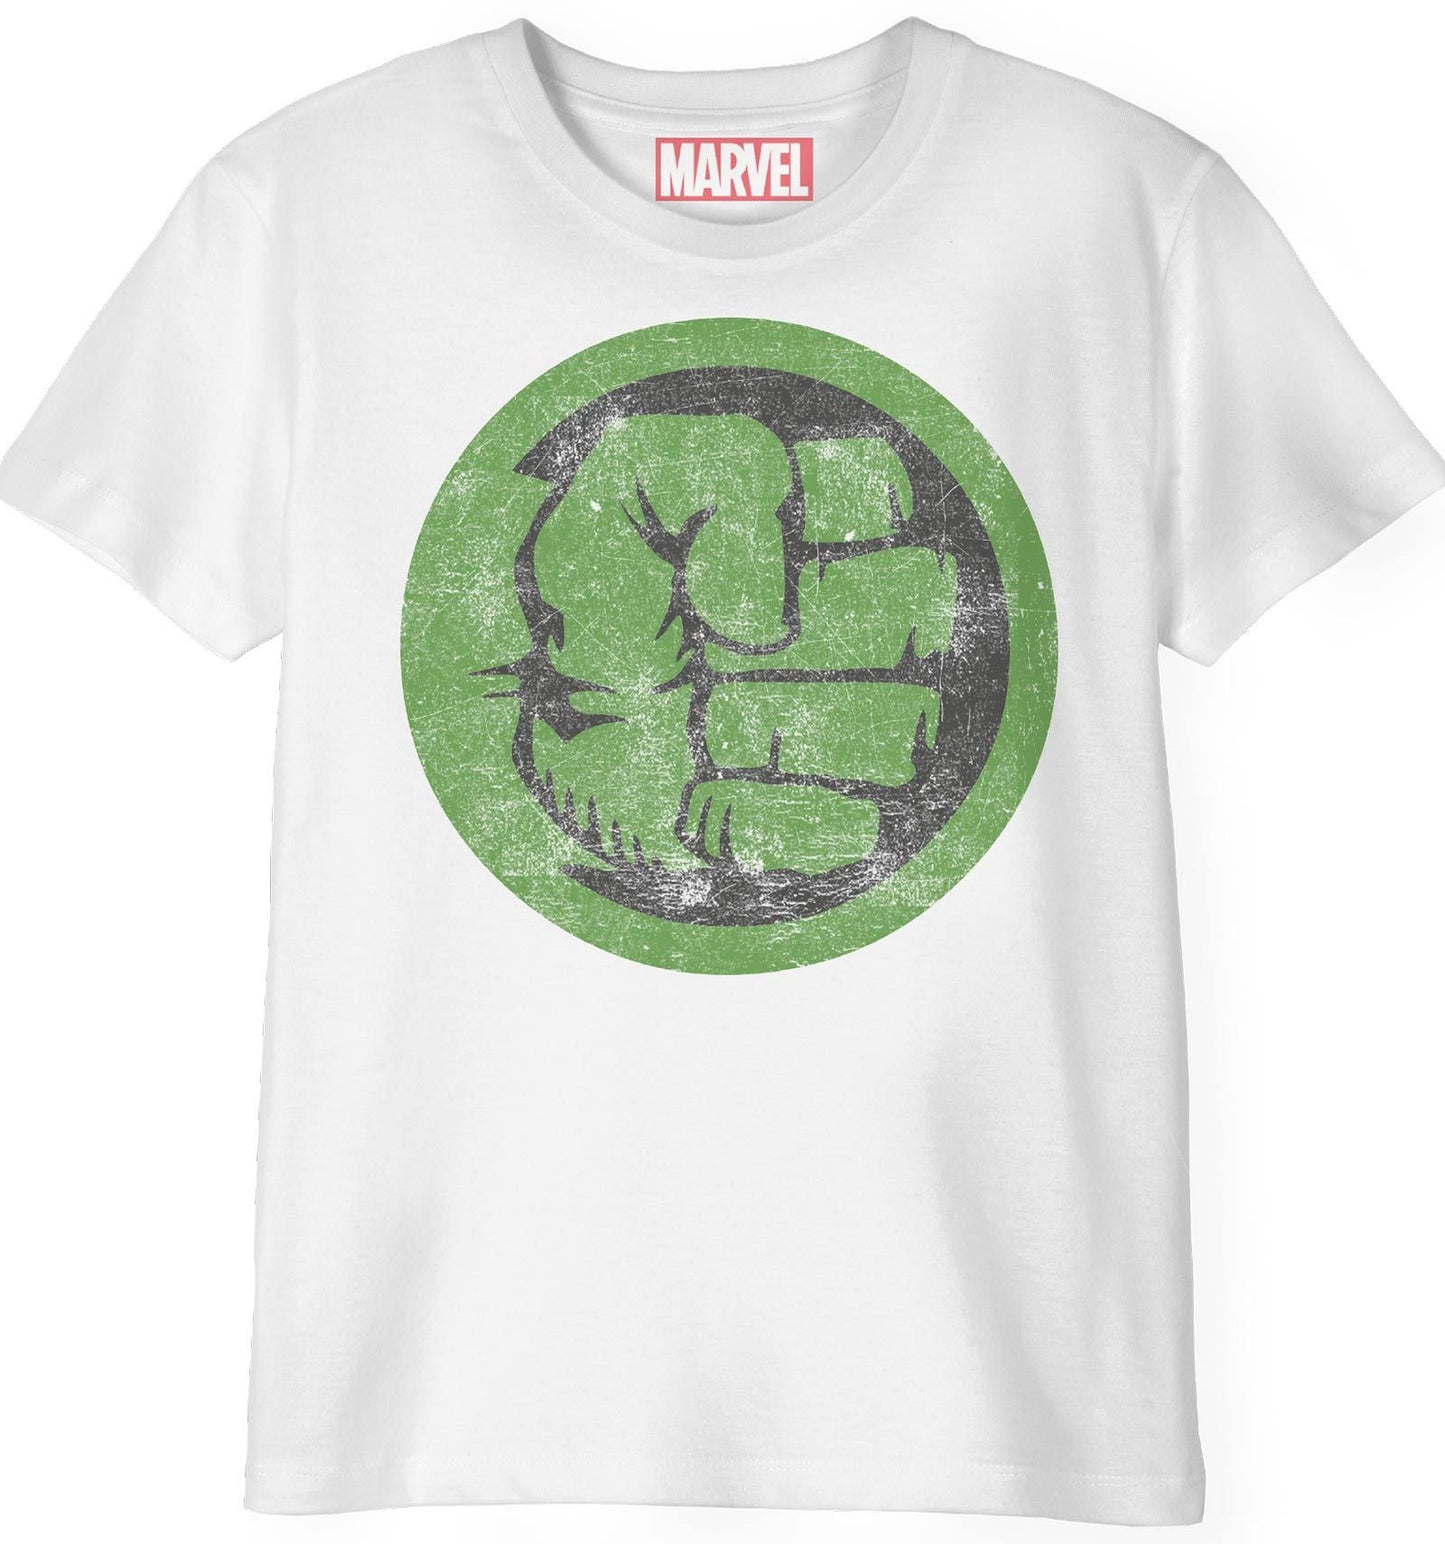 Marvel Kid's T-shirt - Hulk Punch Logo